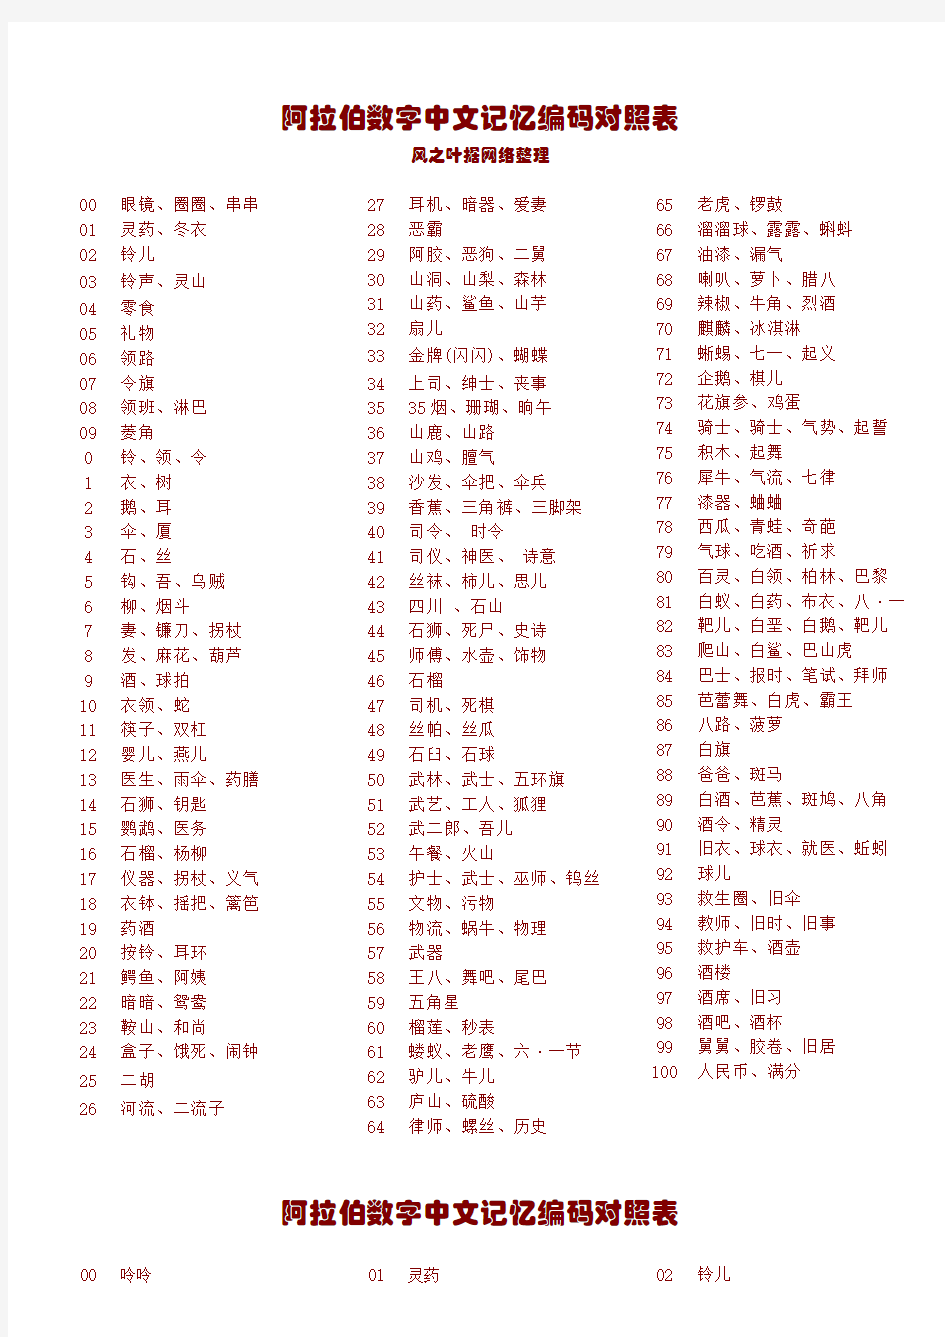 阿拉伯数字中文记忆编码对照表